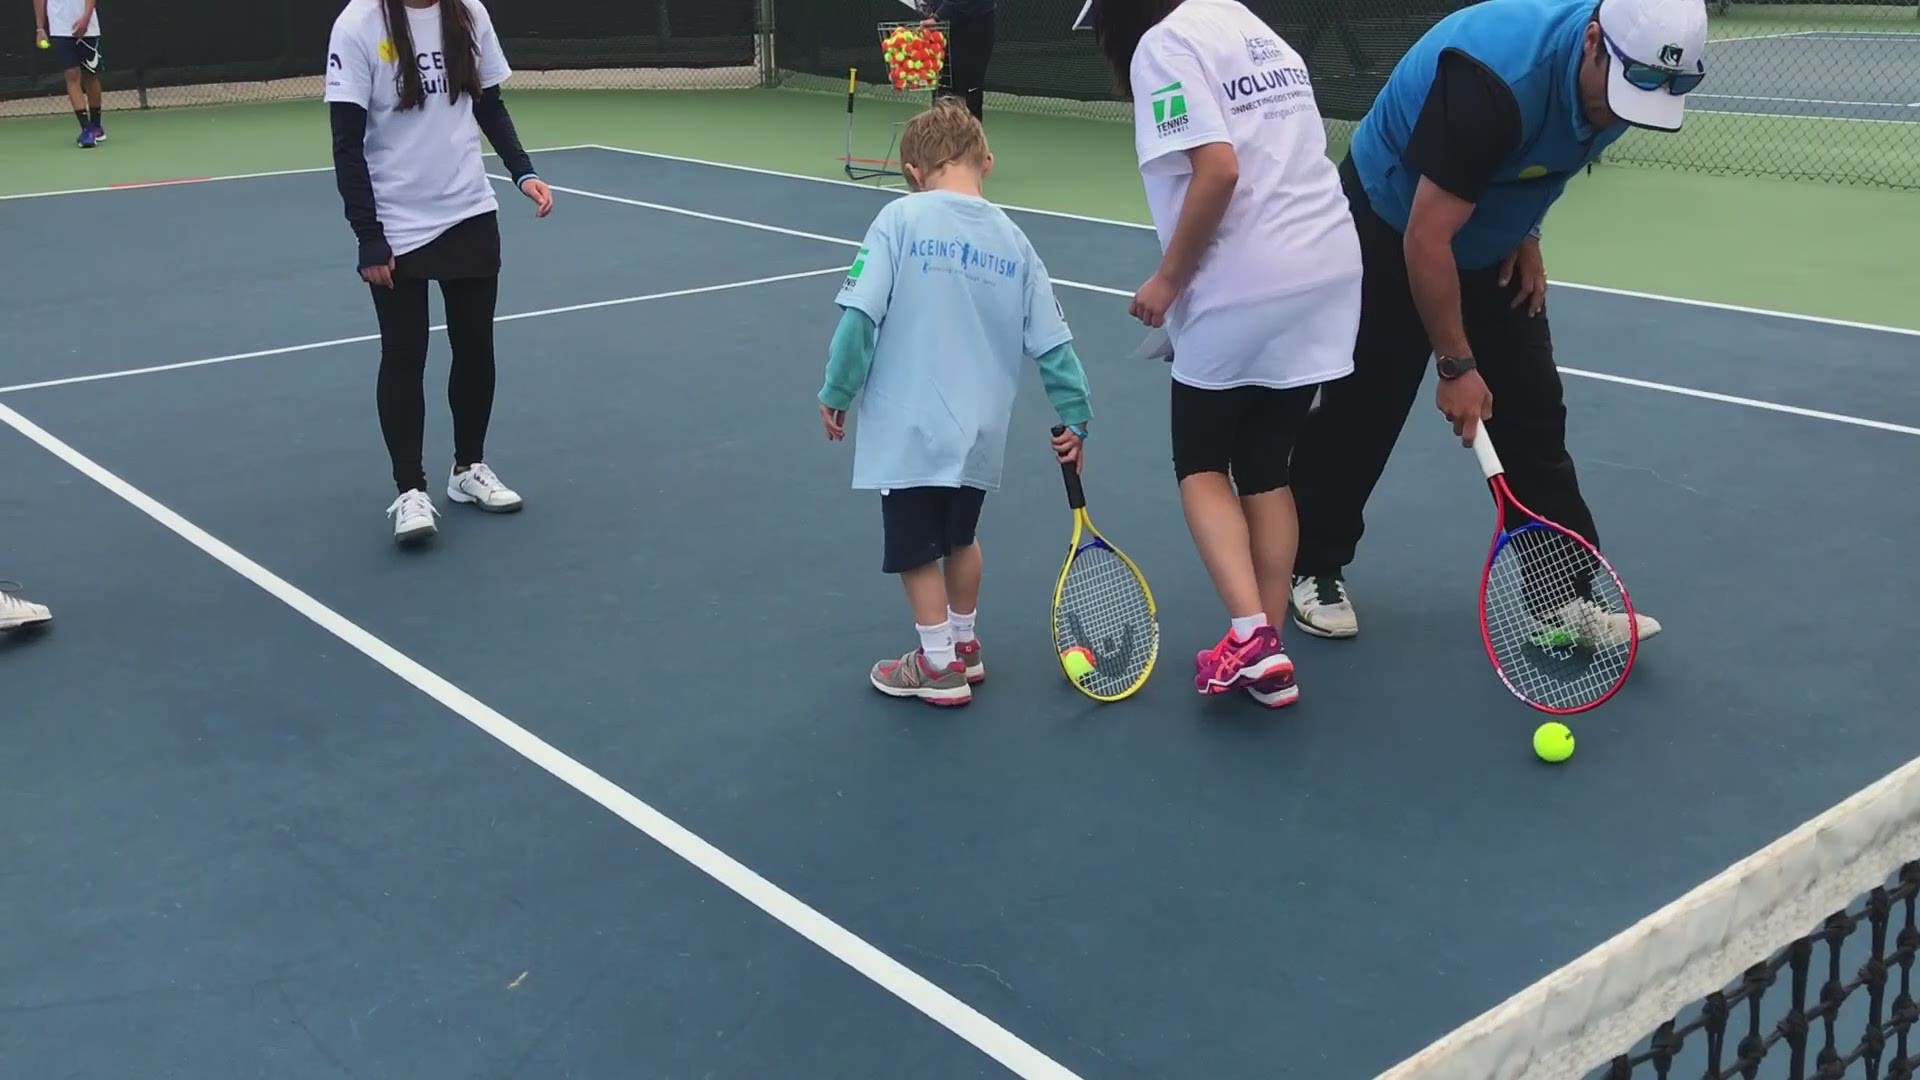 Verraad Aarde Wardianzaak Program uses tennis to help reach children with Autism | cbs19.tv